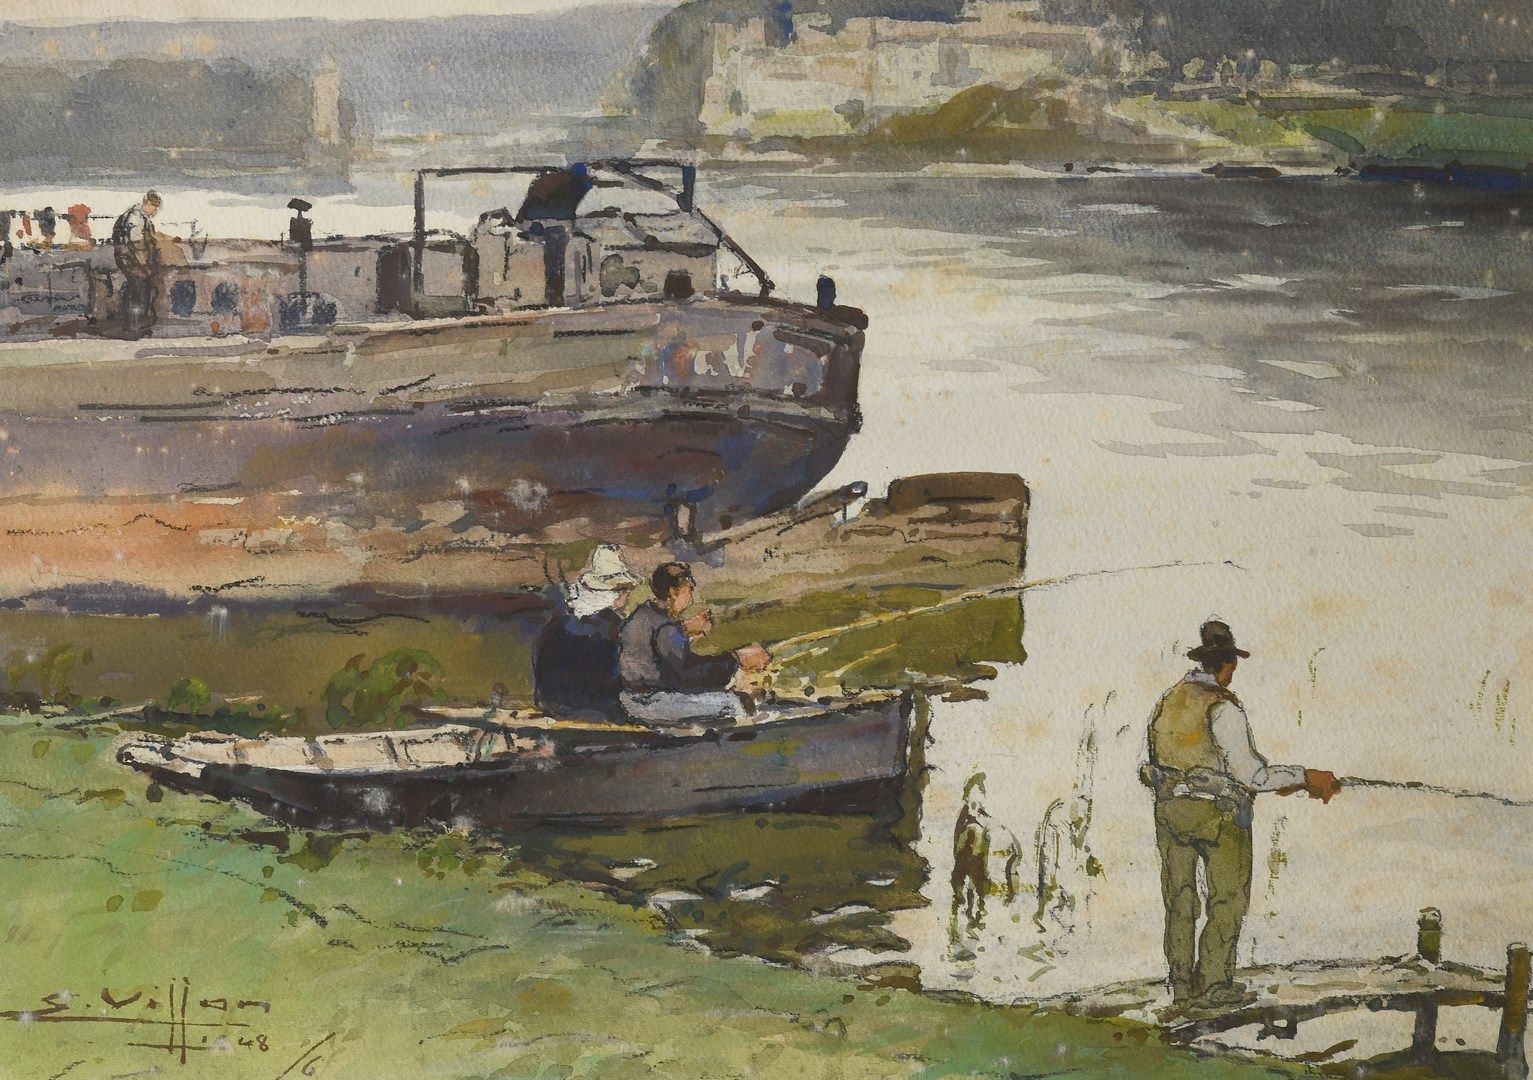 Null 维龙-尤金，1879-1951年

索恩河上的驳船和渔民，1948年

水粉画

左下角有签名和日期，位于装裱的背面

26 x 37 cm 正在观看